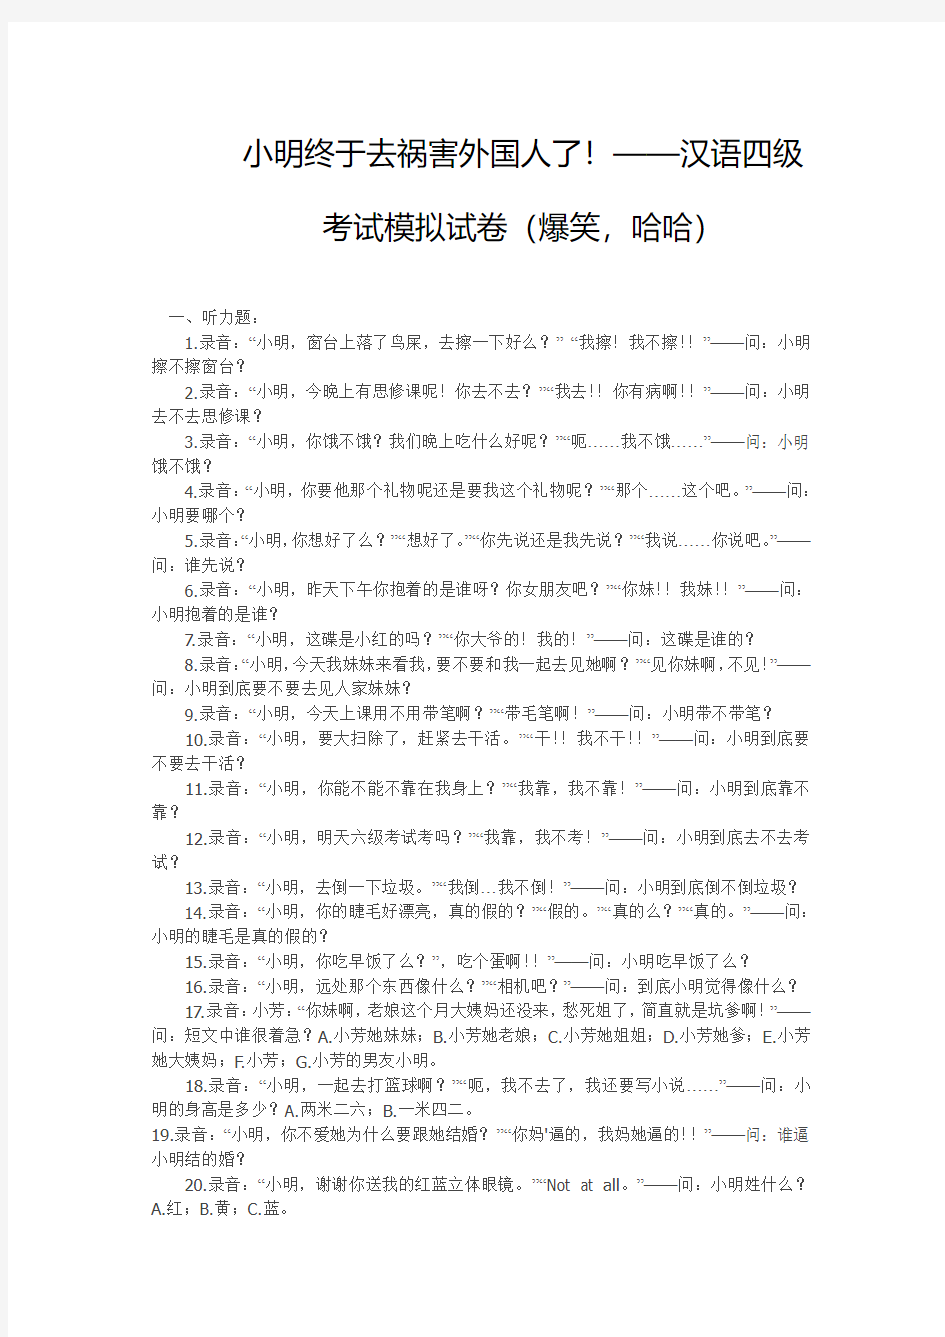 小明终于去祸害外国人了!——汉语四级考试模拟试卷(爆笑,哈哈)